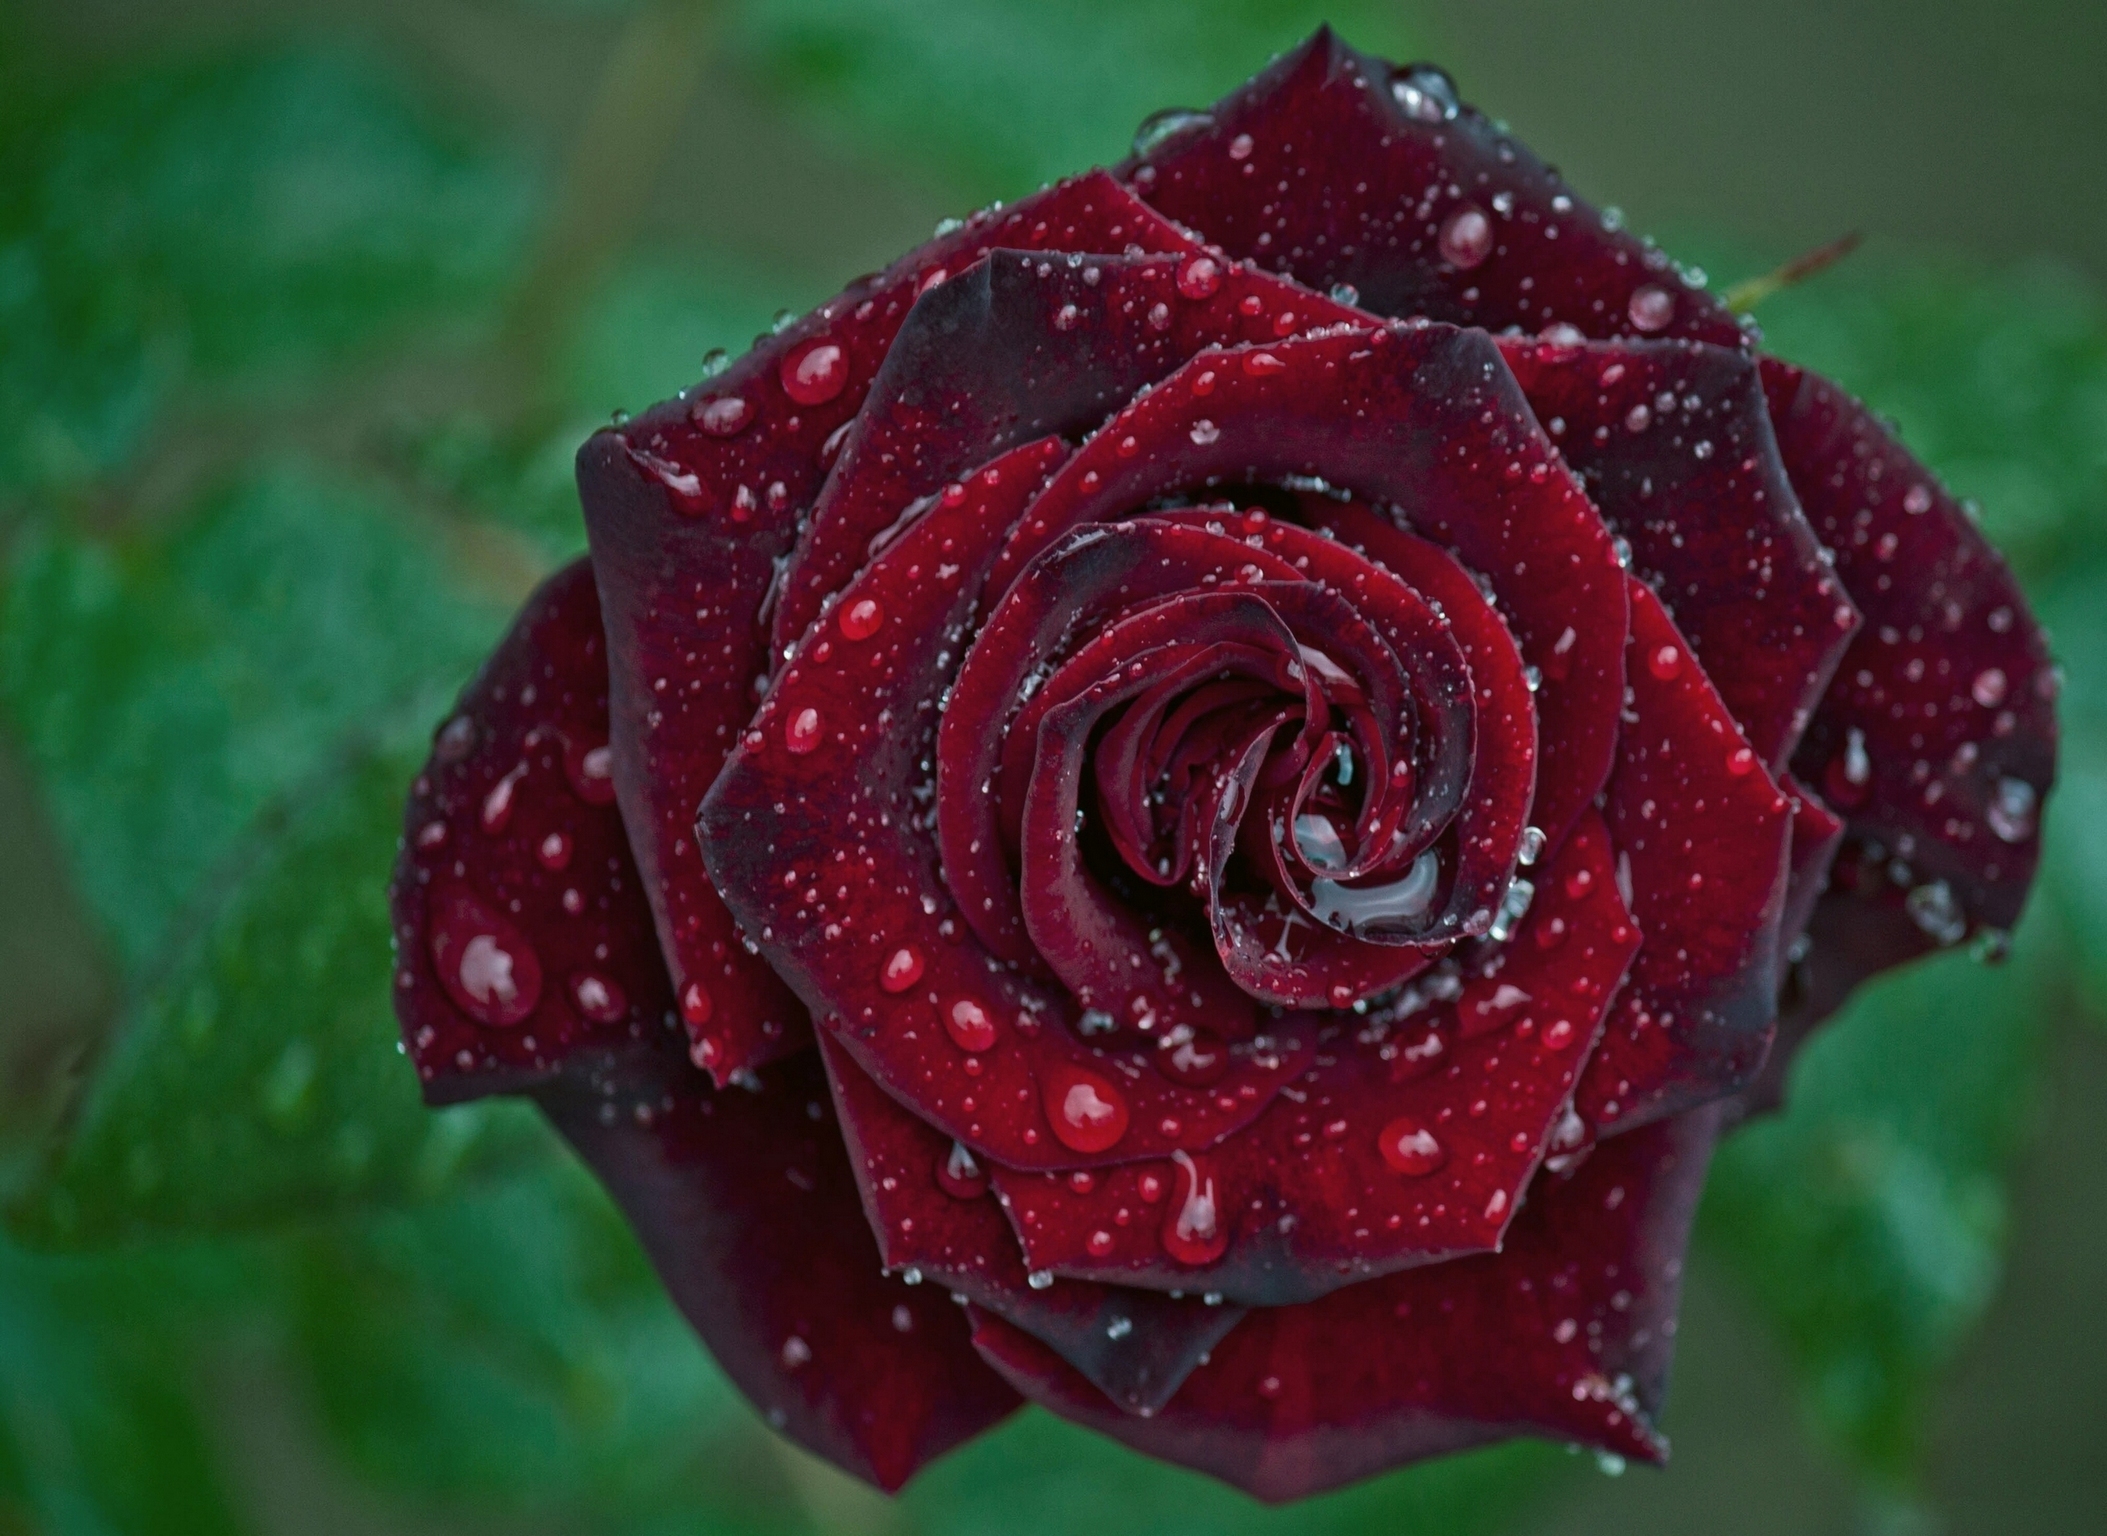 Красивые Цветы Мира Розы Фото